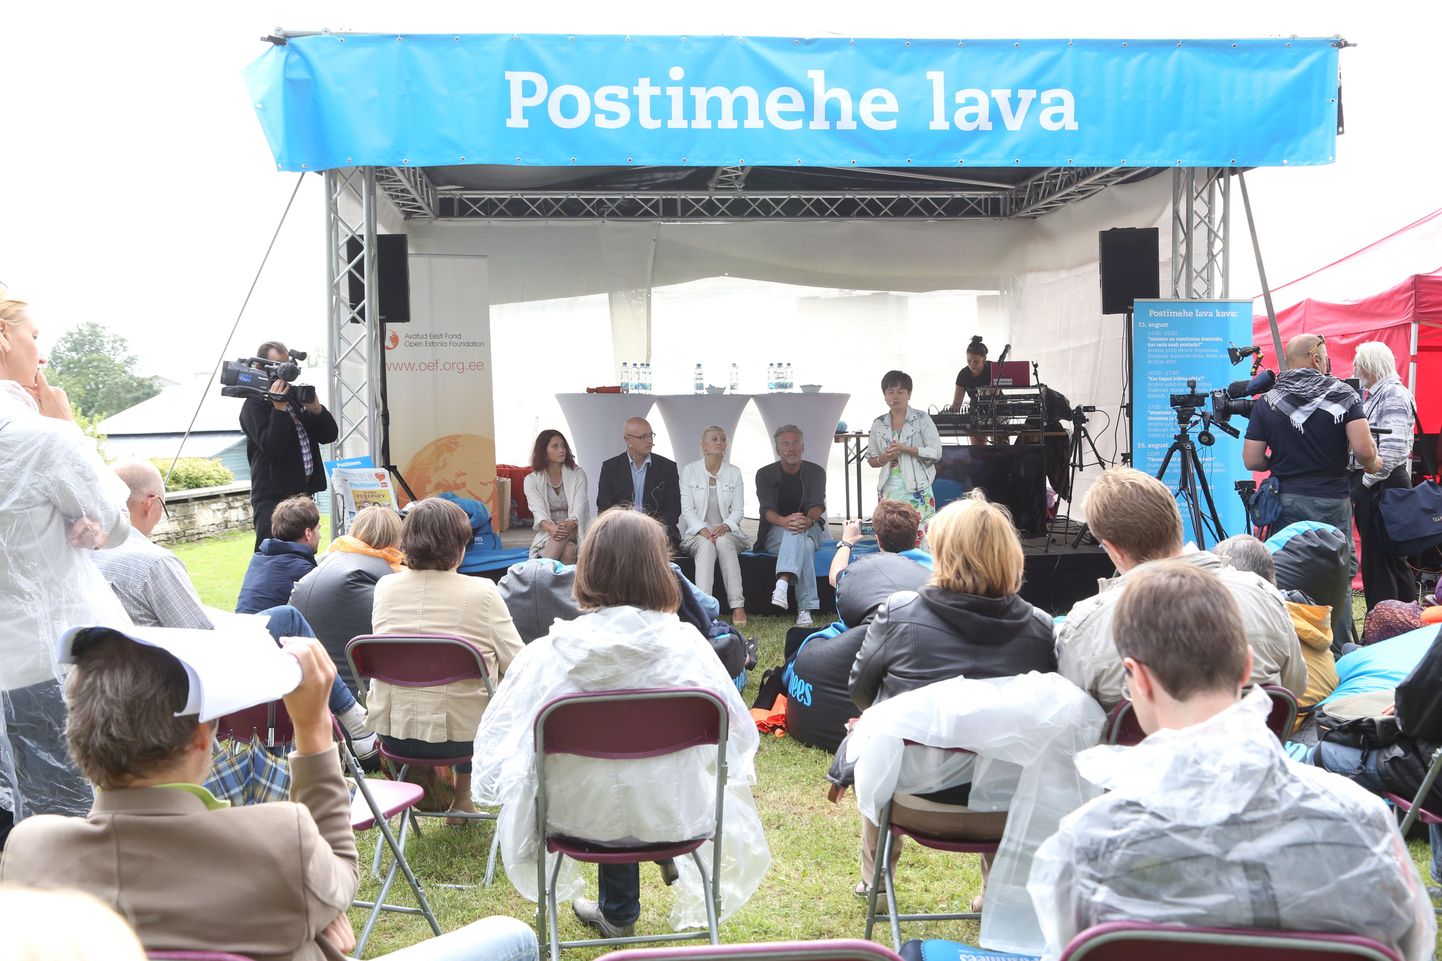 Пайдеский Фестиваль мнений, в котором в прошлом году участвовал со своей палаткой и Postimees, в  эту субботу впервые проведет свою двуязычную разминку в Ида-Вирумаа.